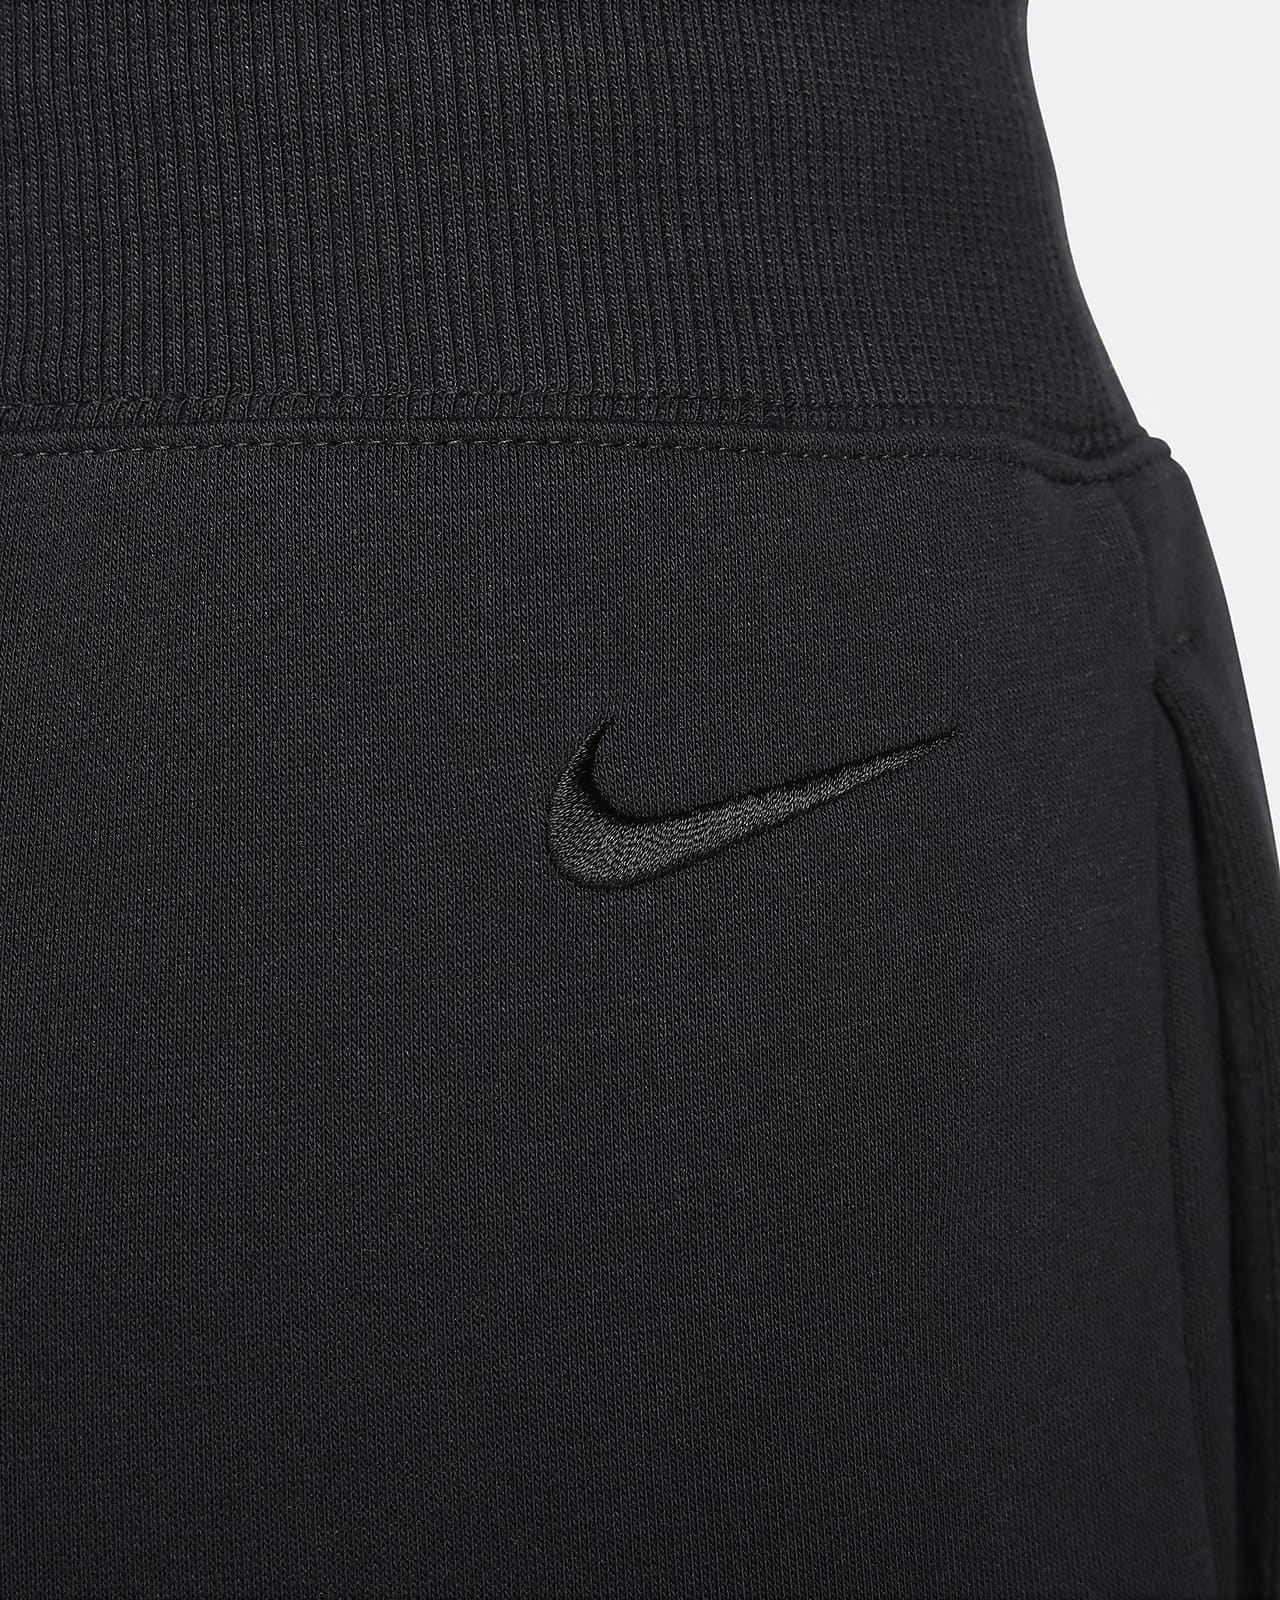 Nike Sportswear Women's High-Waisted Wide-Leg Fleece Pants.